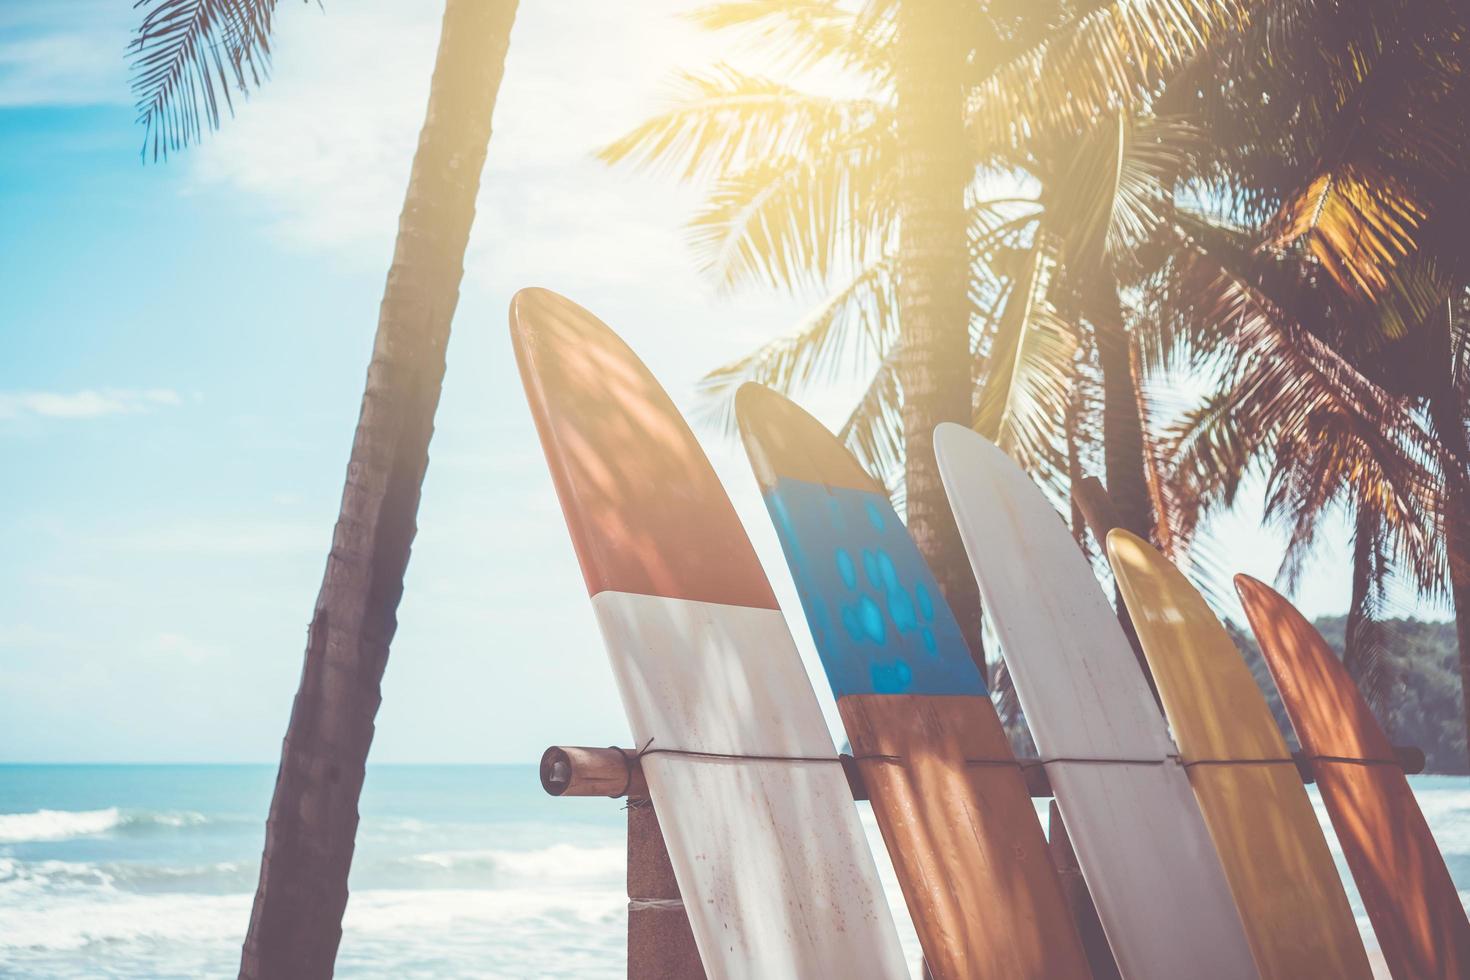 De nombreuses planches de surf à côté des cocotiers à la plage d'été avec la lumière du soleil et le ciel bleu photo